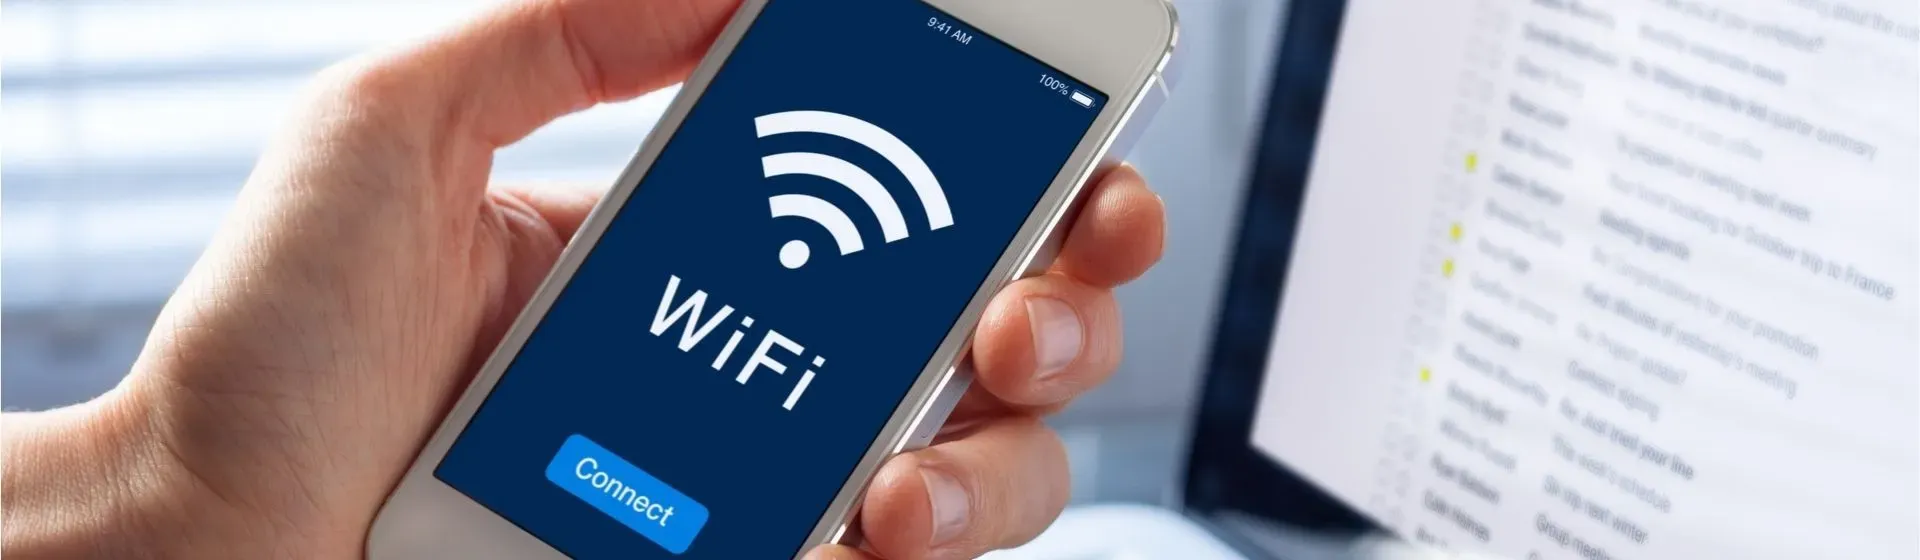 Capa do post: Como descobrir a senha do Wi-Fi pelo celular já conectado